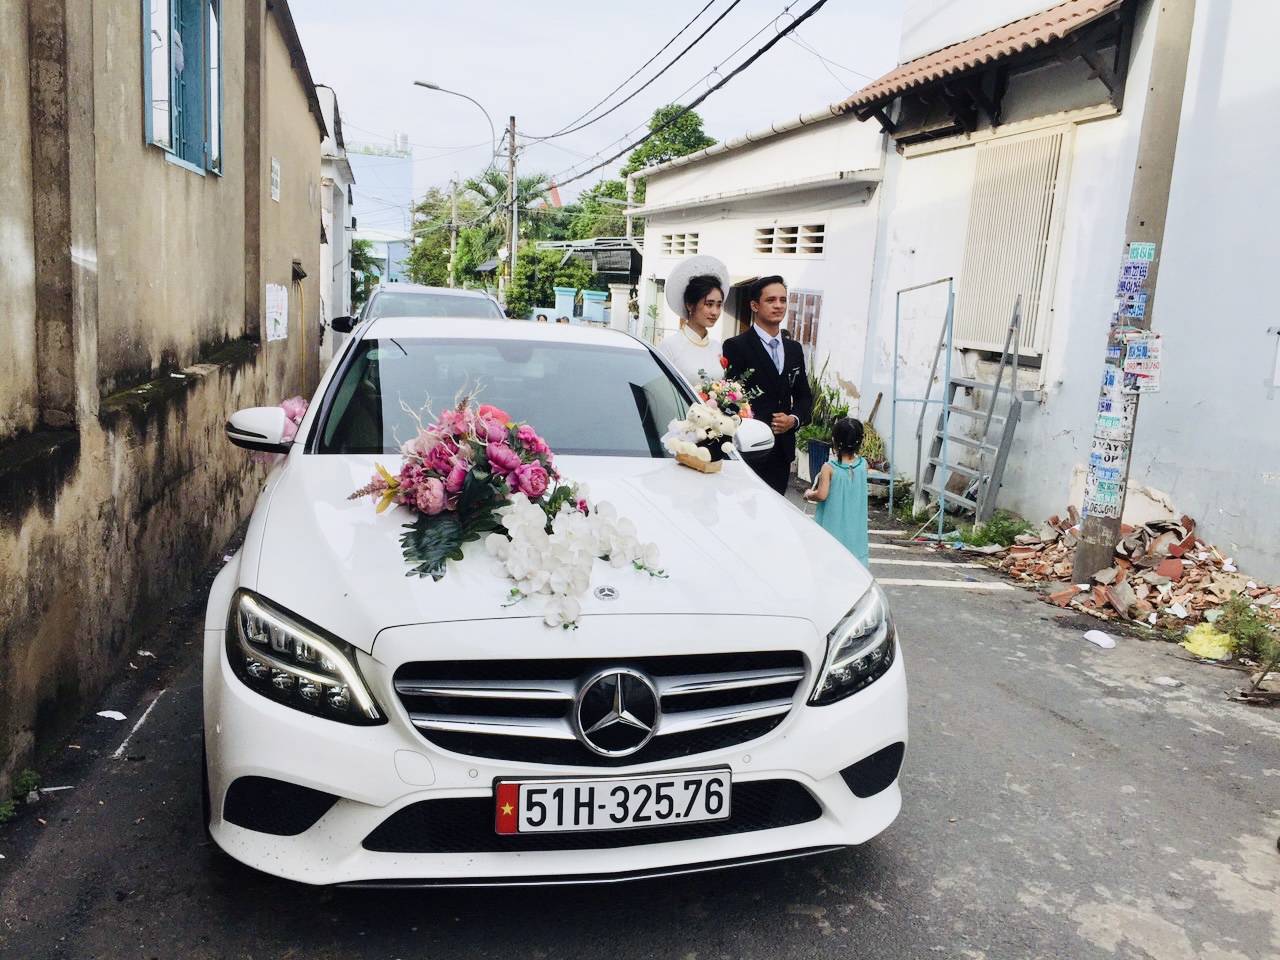 Vip Cars Bảo Dương cho thuê xe cưới ngày 6/6/2021